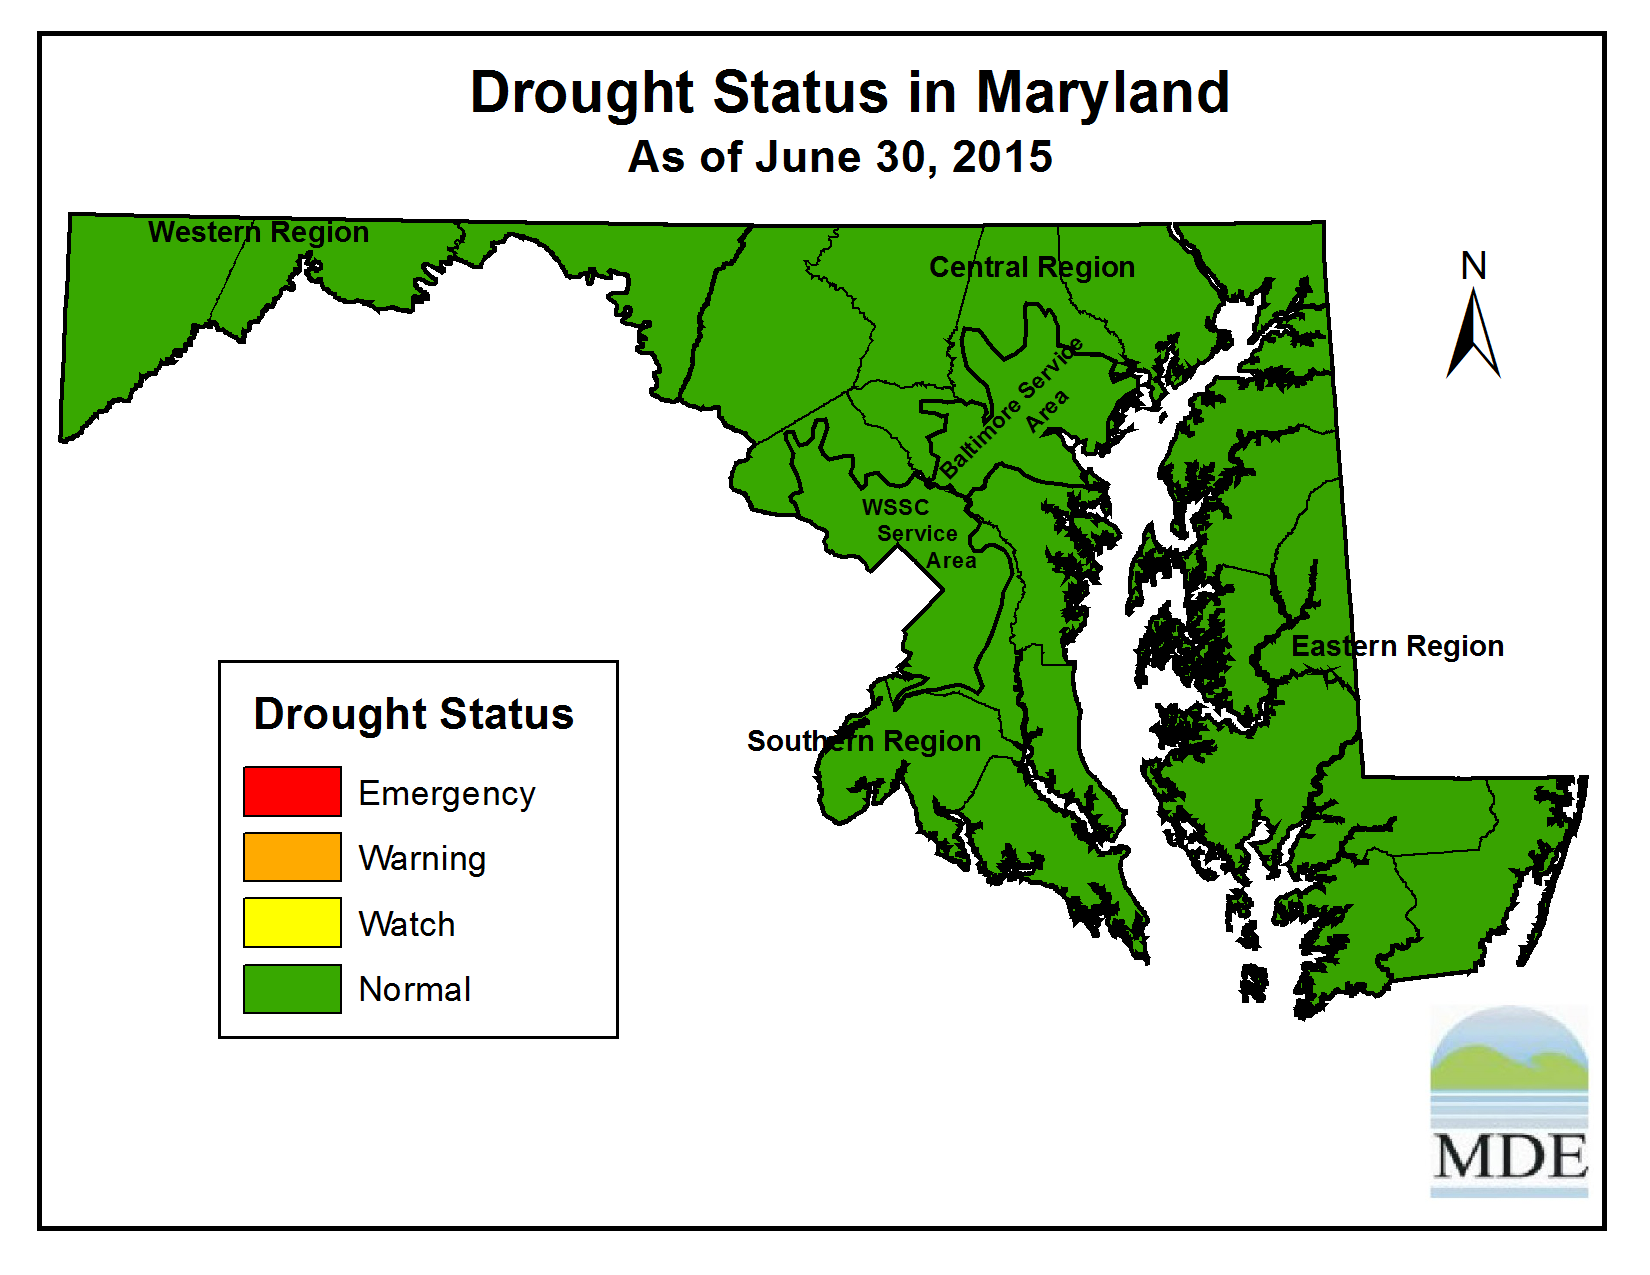 Drought Status as of June 30, 2015